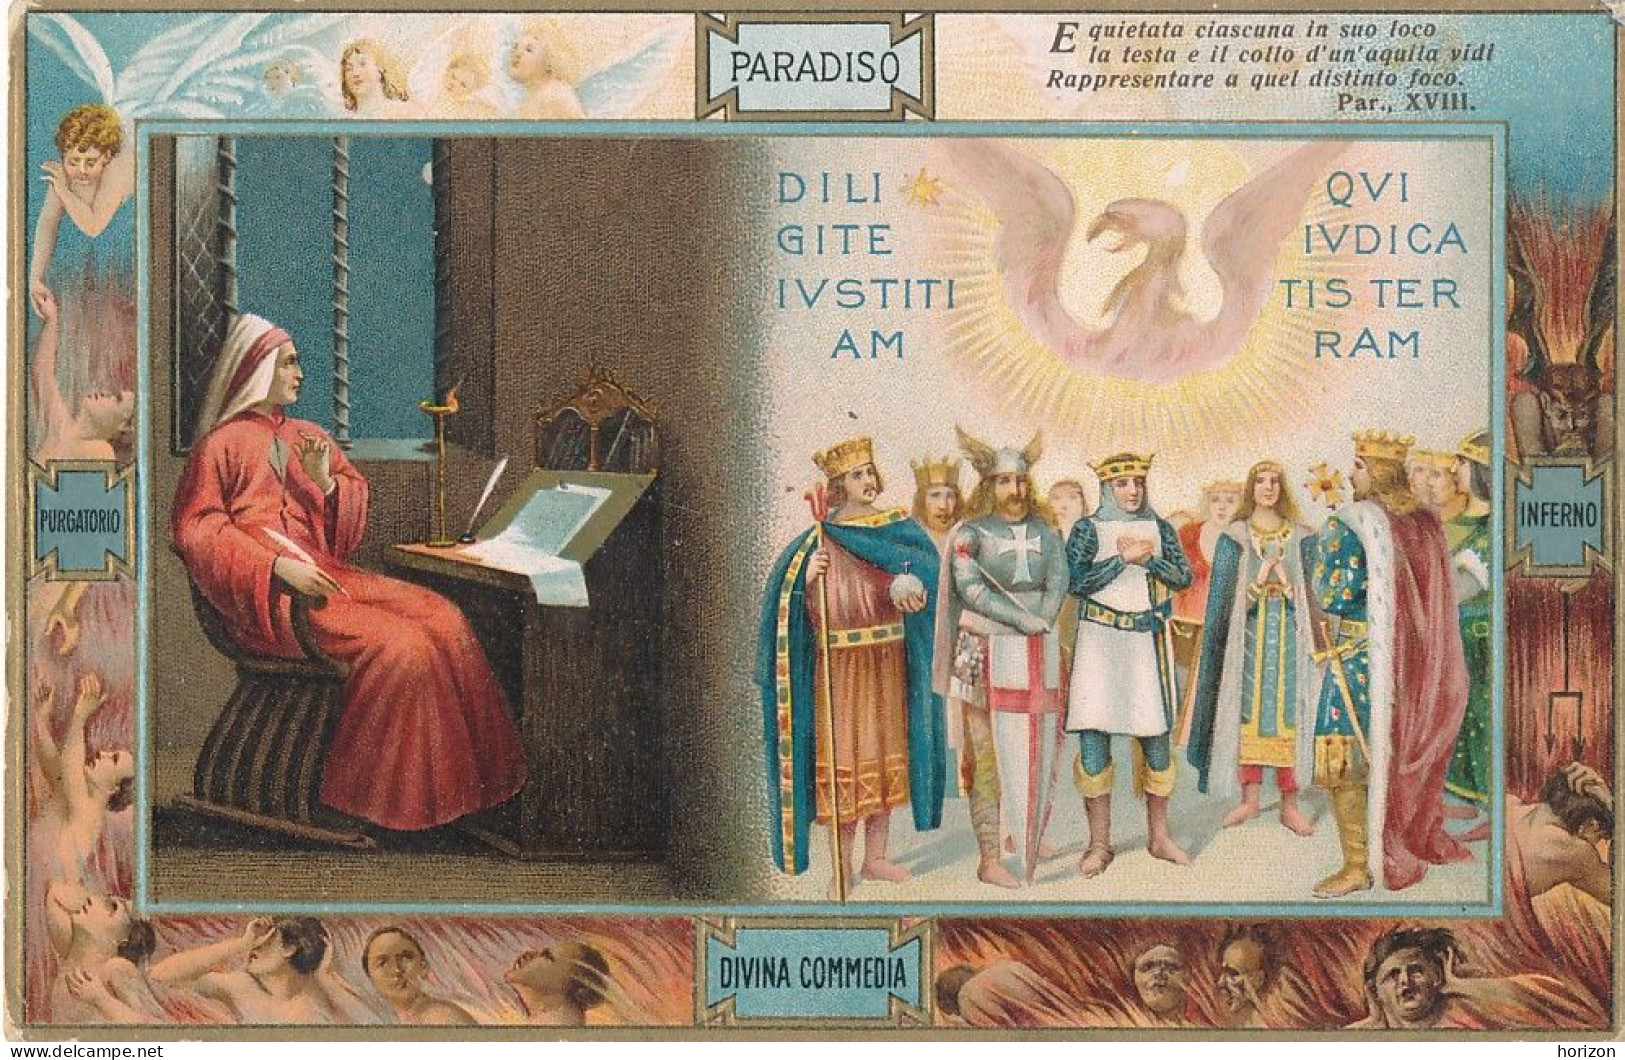 2f.765  DANTE Alighieri - La Divina Commedia - Paradiso - Lotto di 15 cartoline collez,ne S. Sborgi